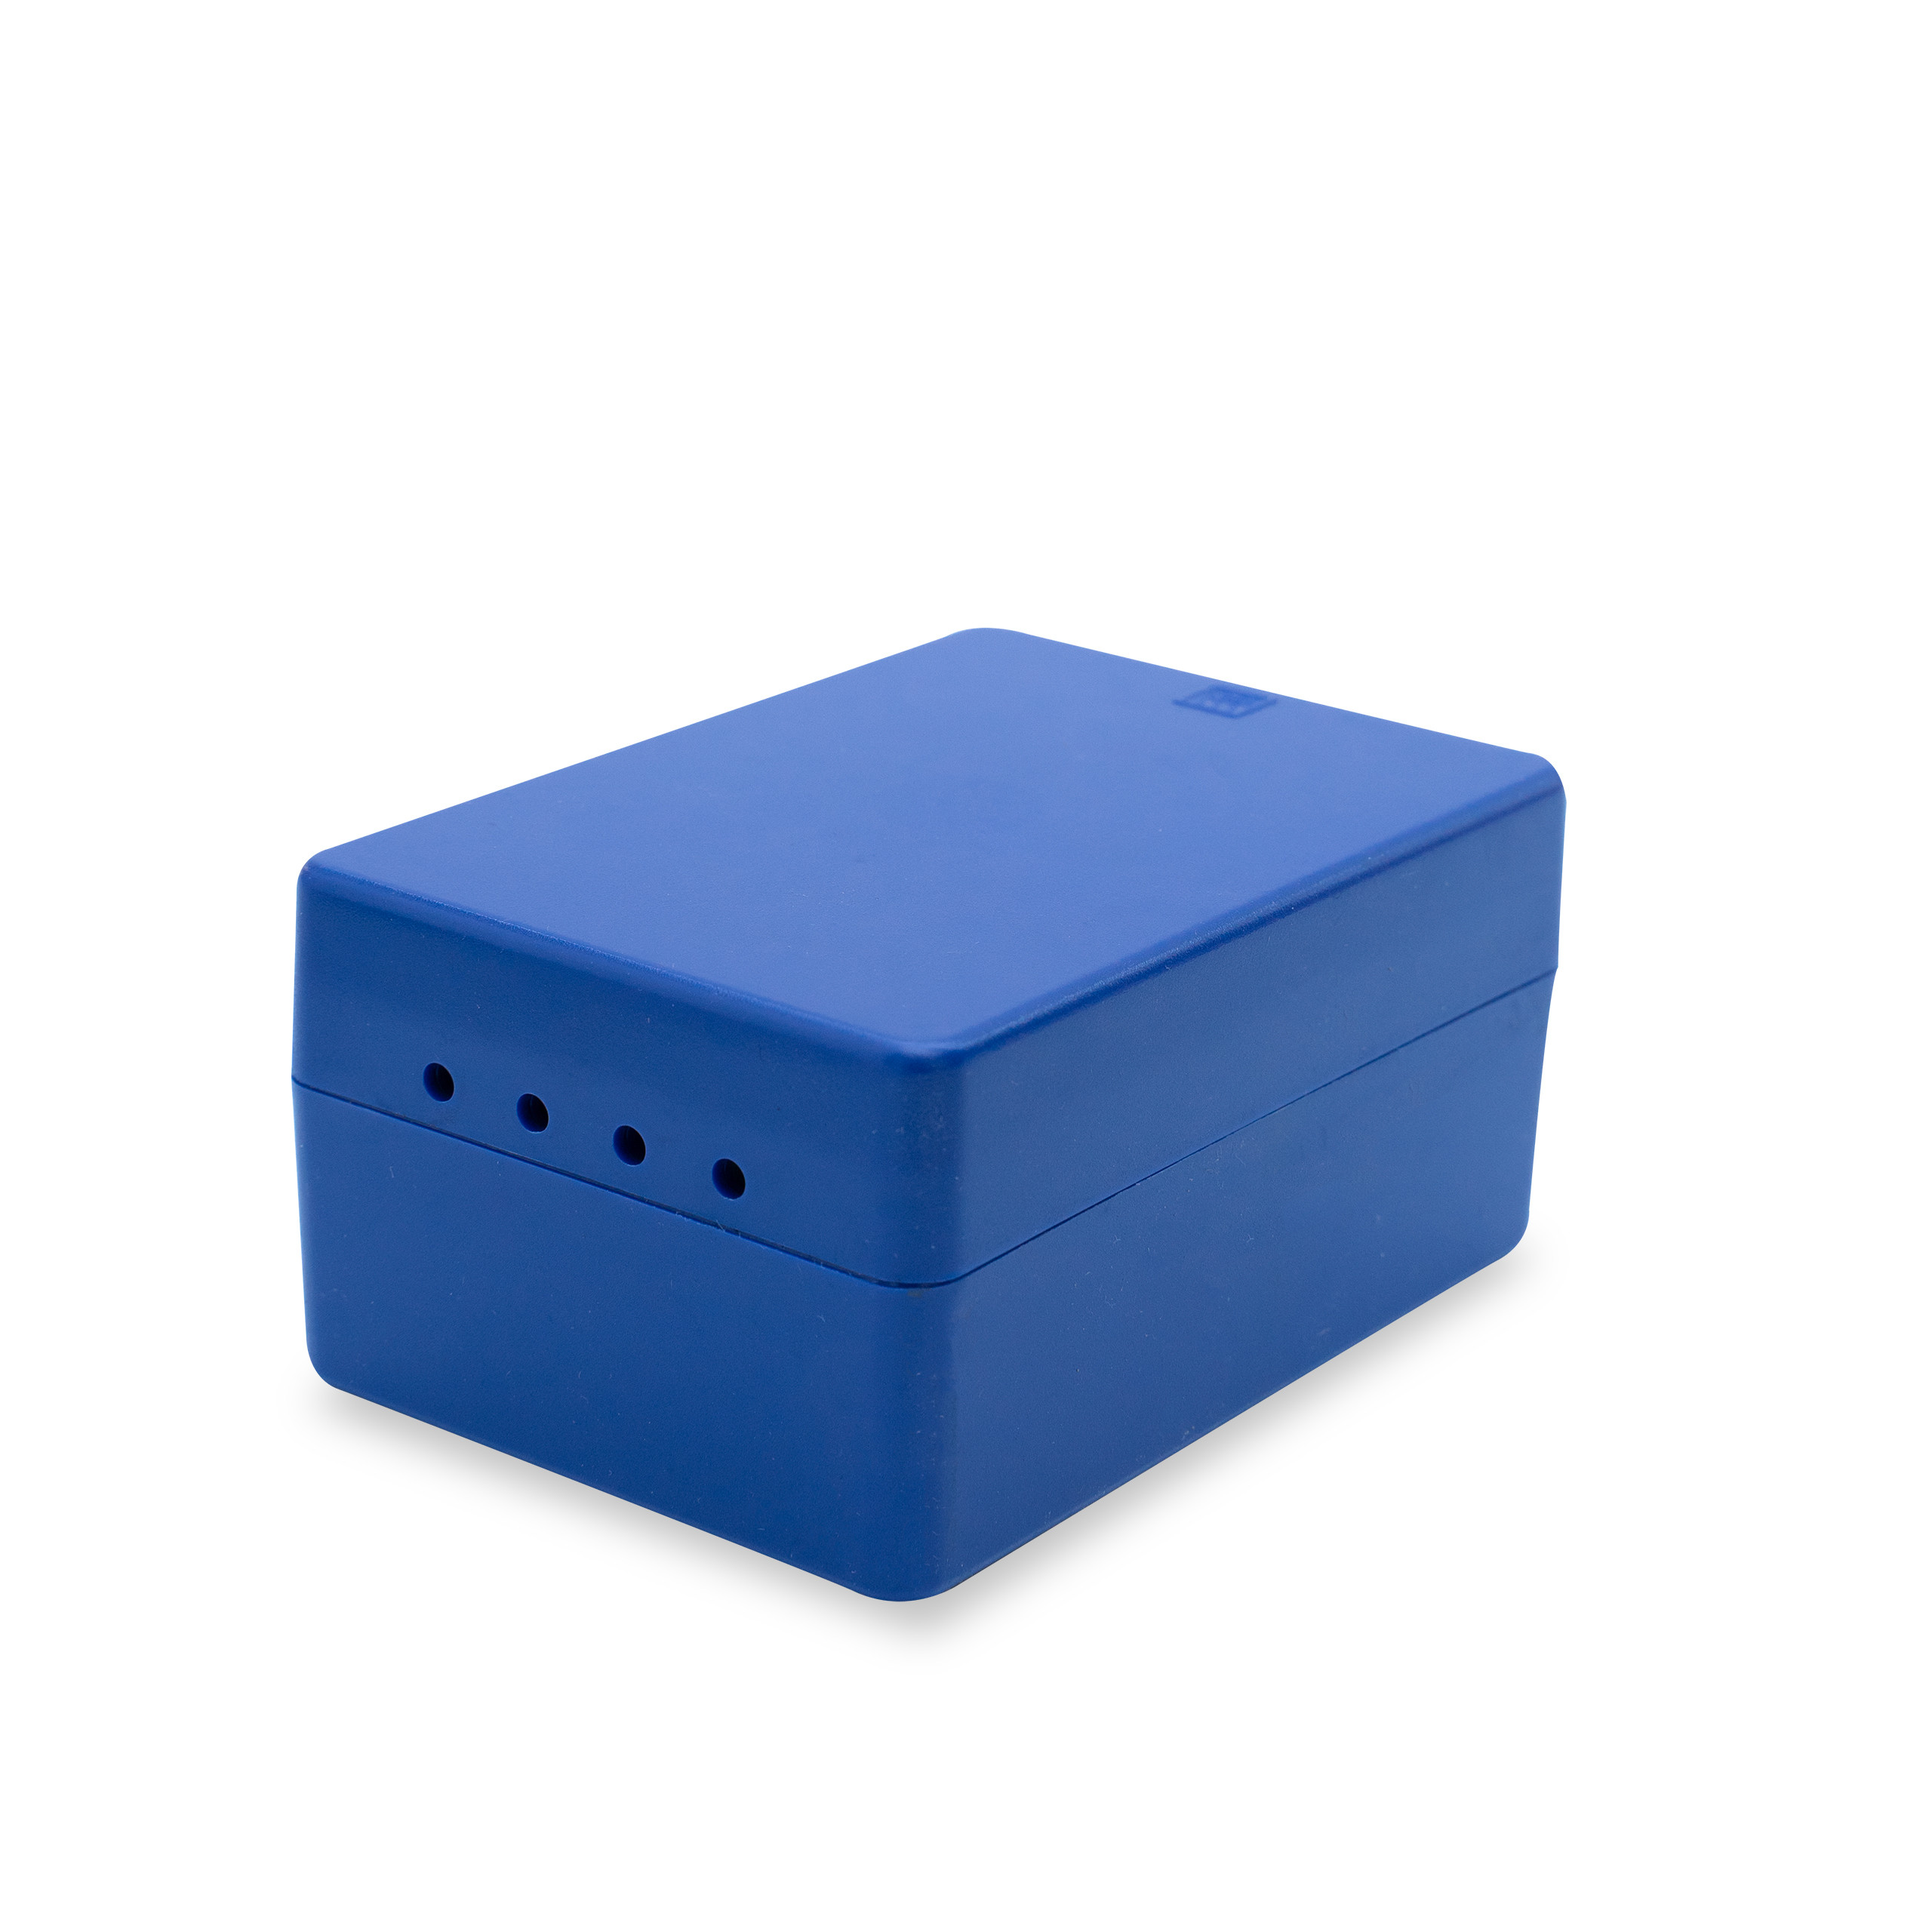 Endo Box Big Autoclavable 160 holes (Blue)